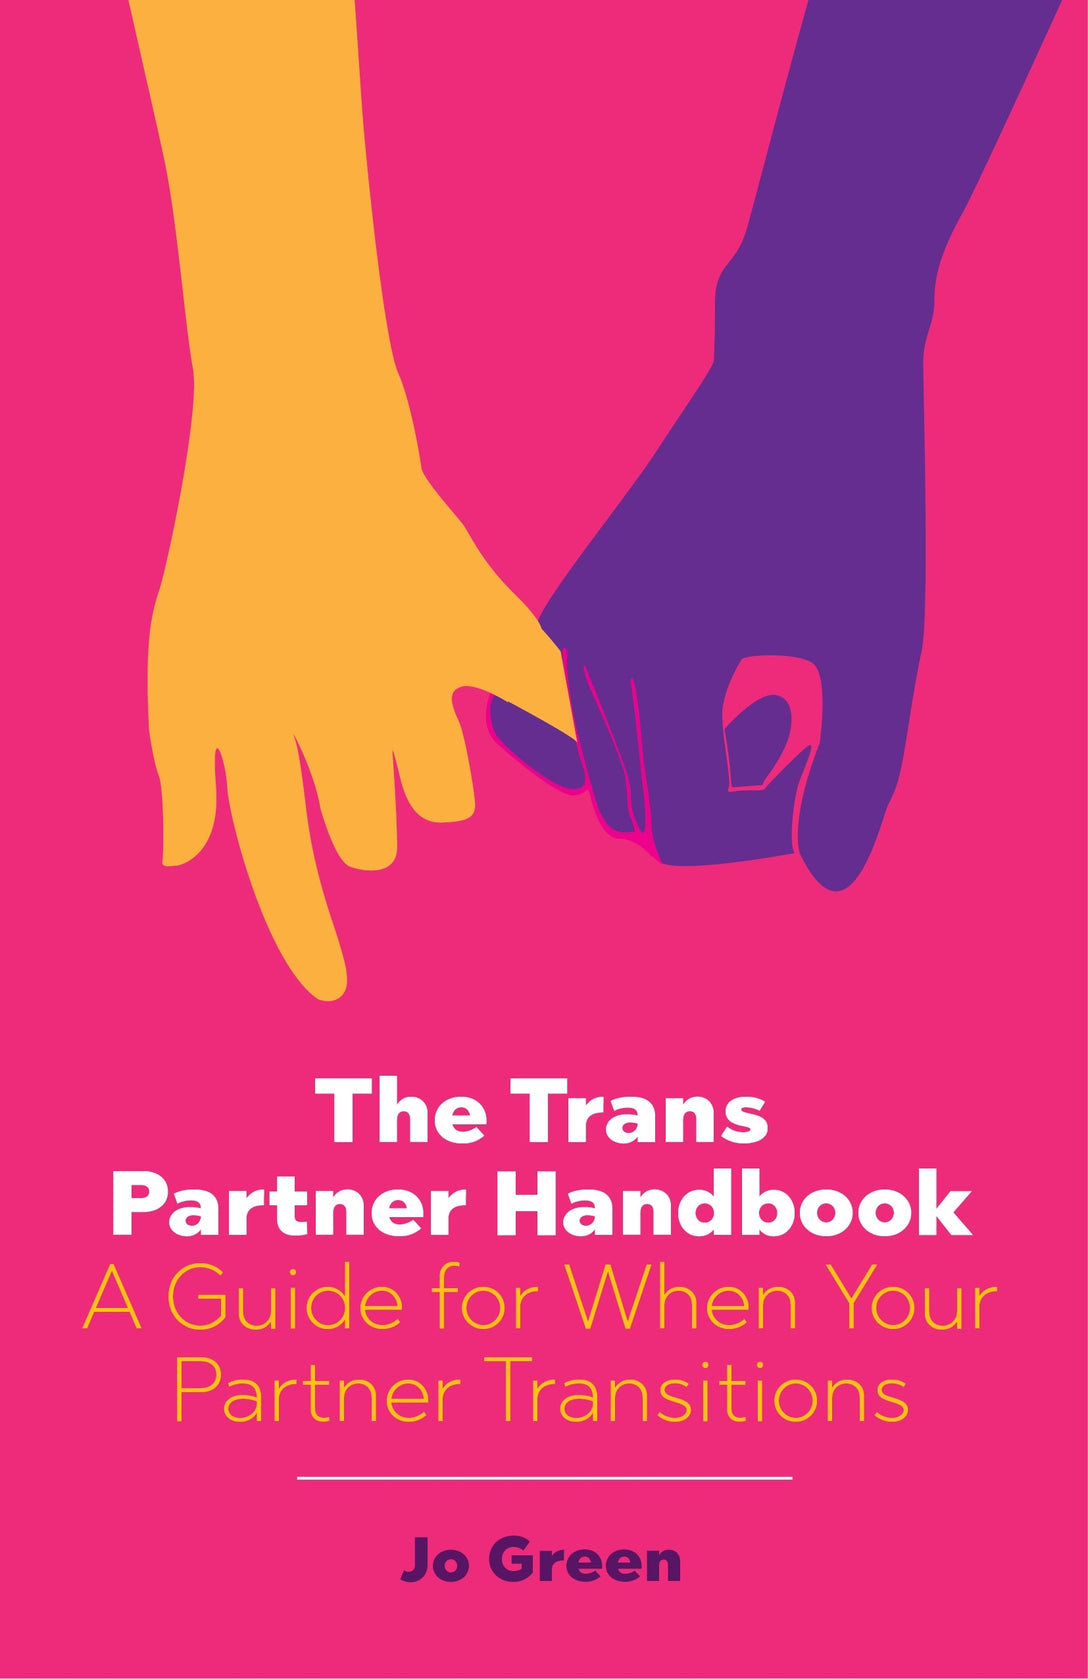 The Trans Partner Handbook by Jo Green